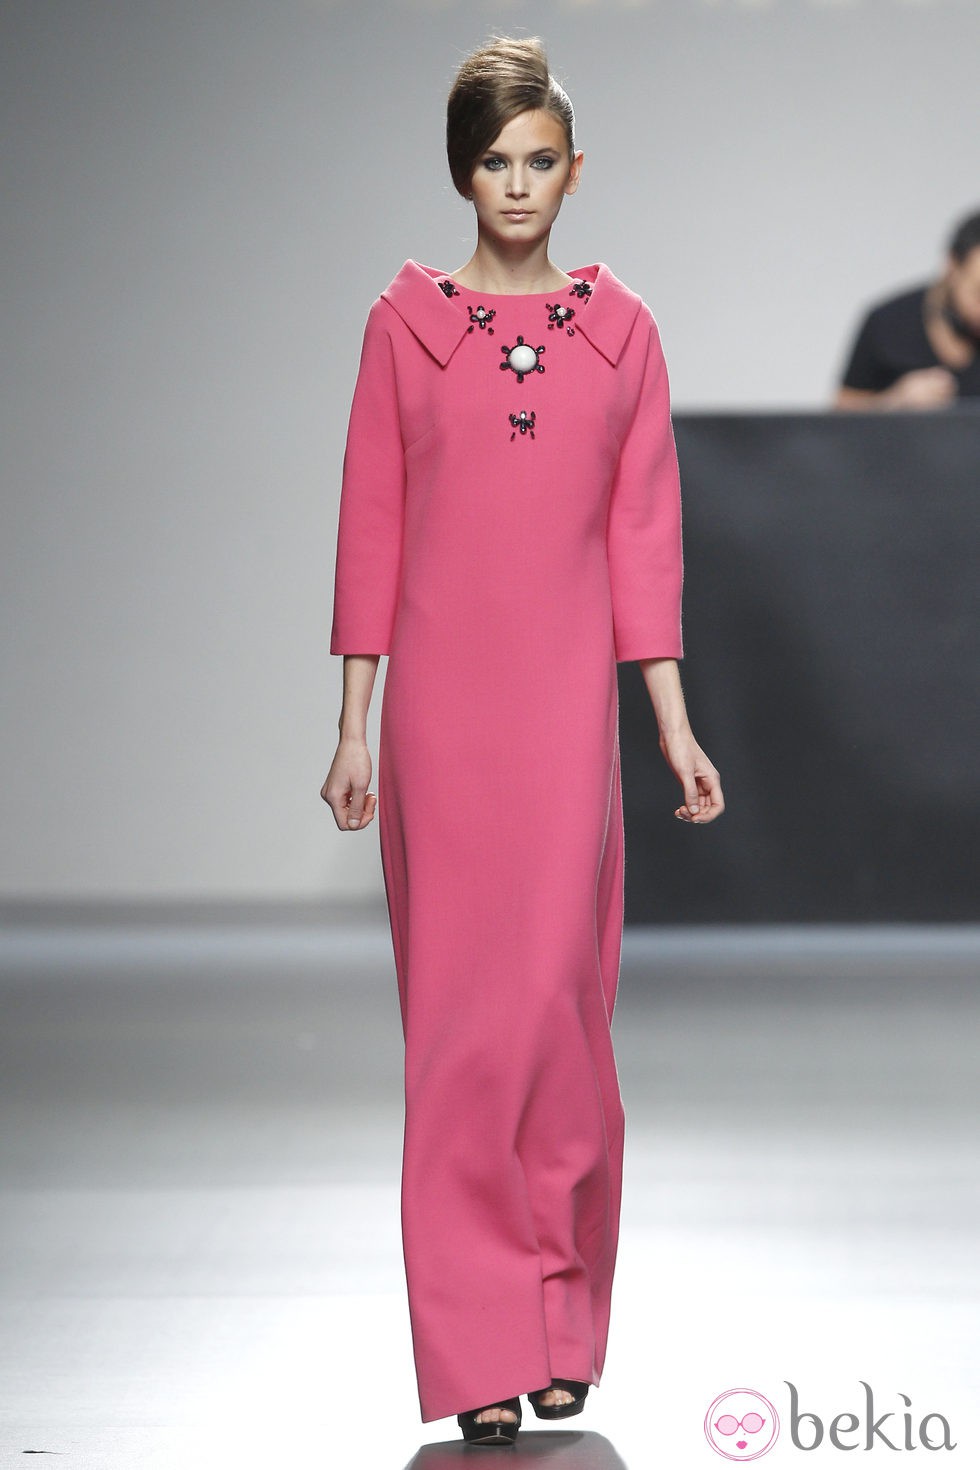 Vestido rosa largo de la colección otoño/invierno 2012/2013 de Juana Martin